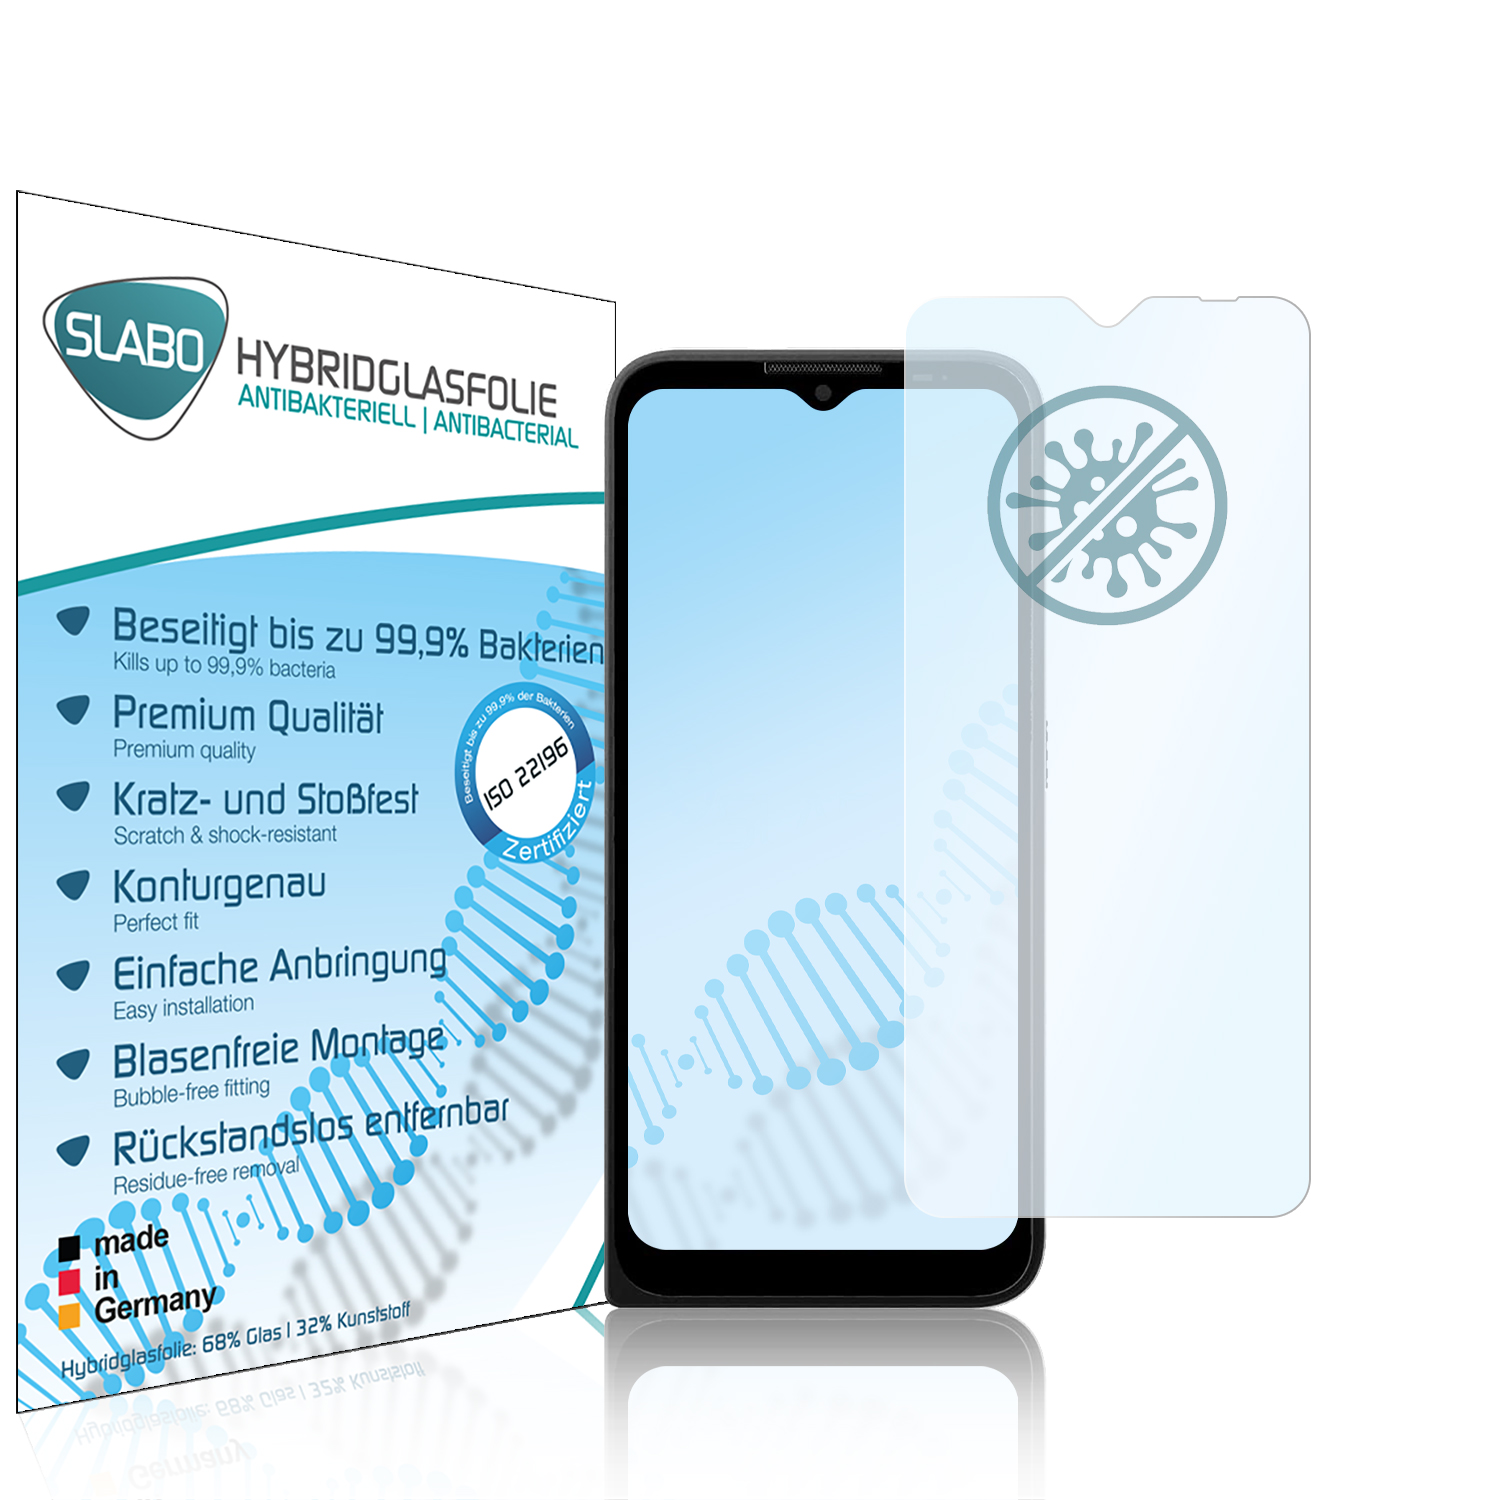 SLABO antibakterielle flexible Defy Hybridglasfolie Motorola (2021)) Displayschutz(für